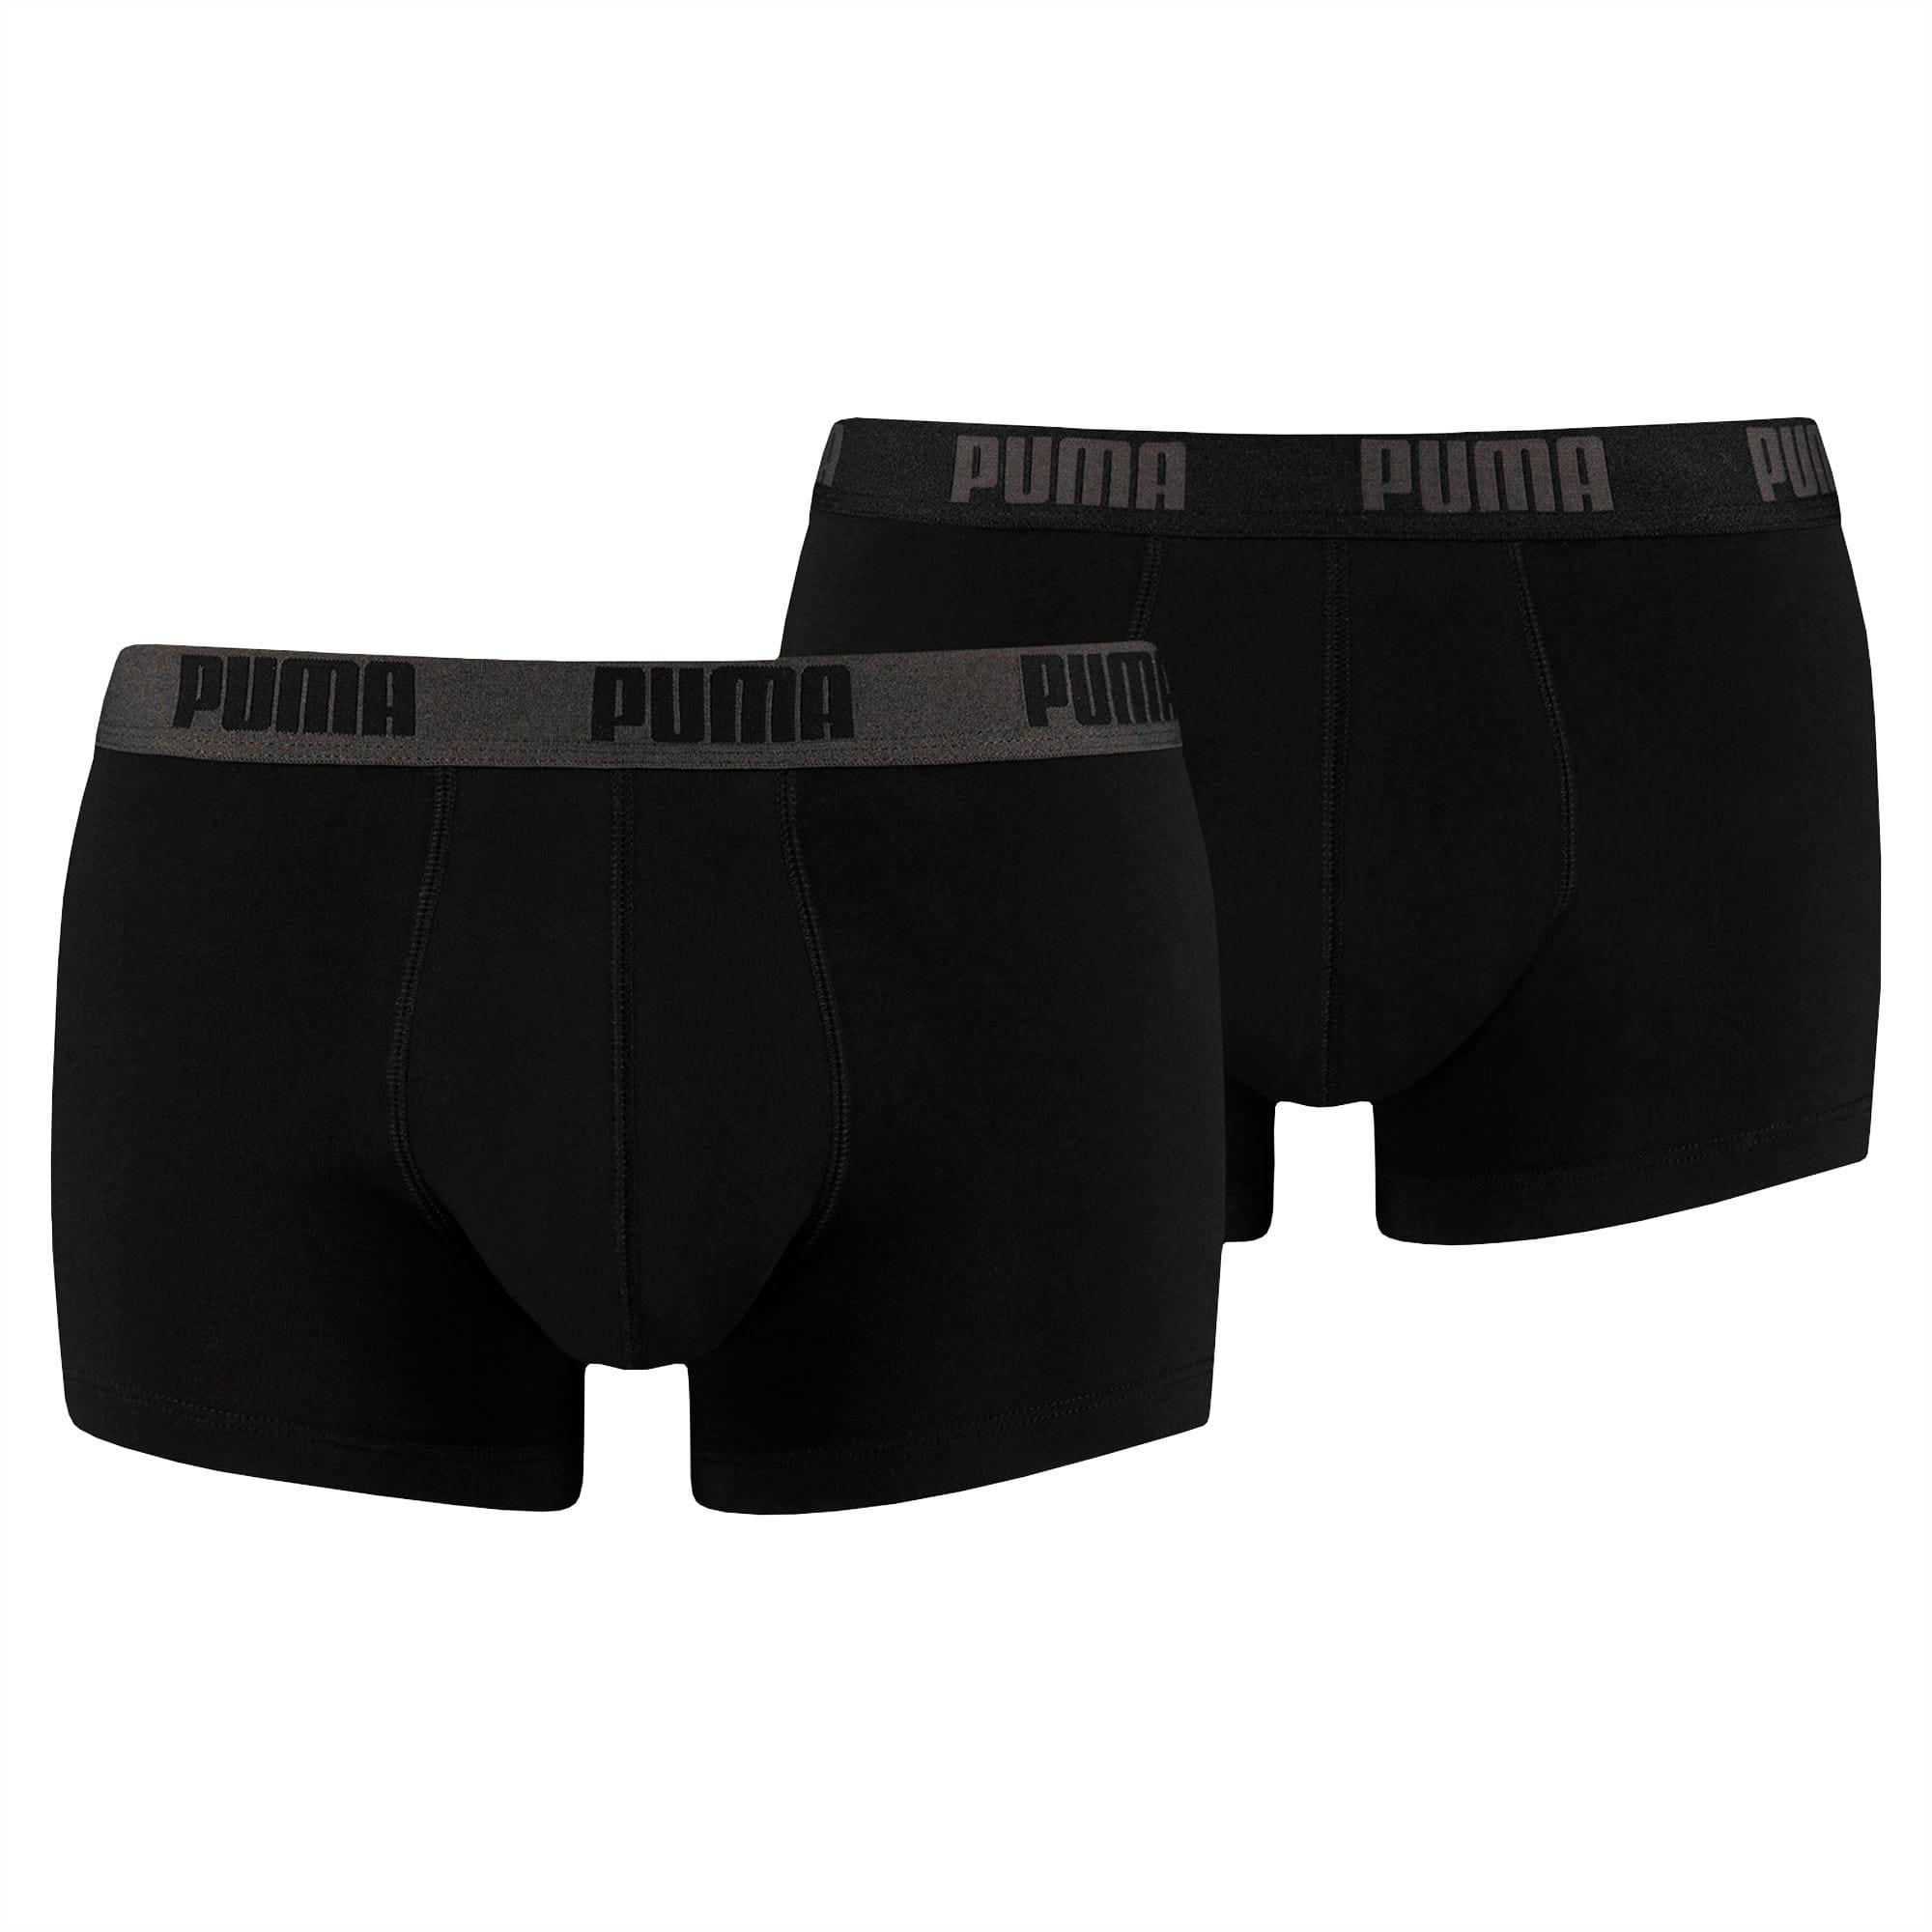 PUMA Basic Men's Trunks (2 Pack 